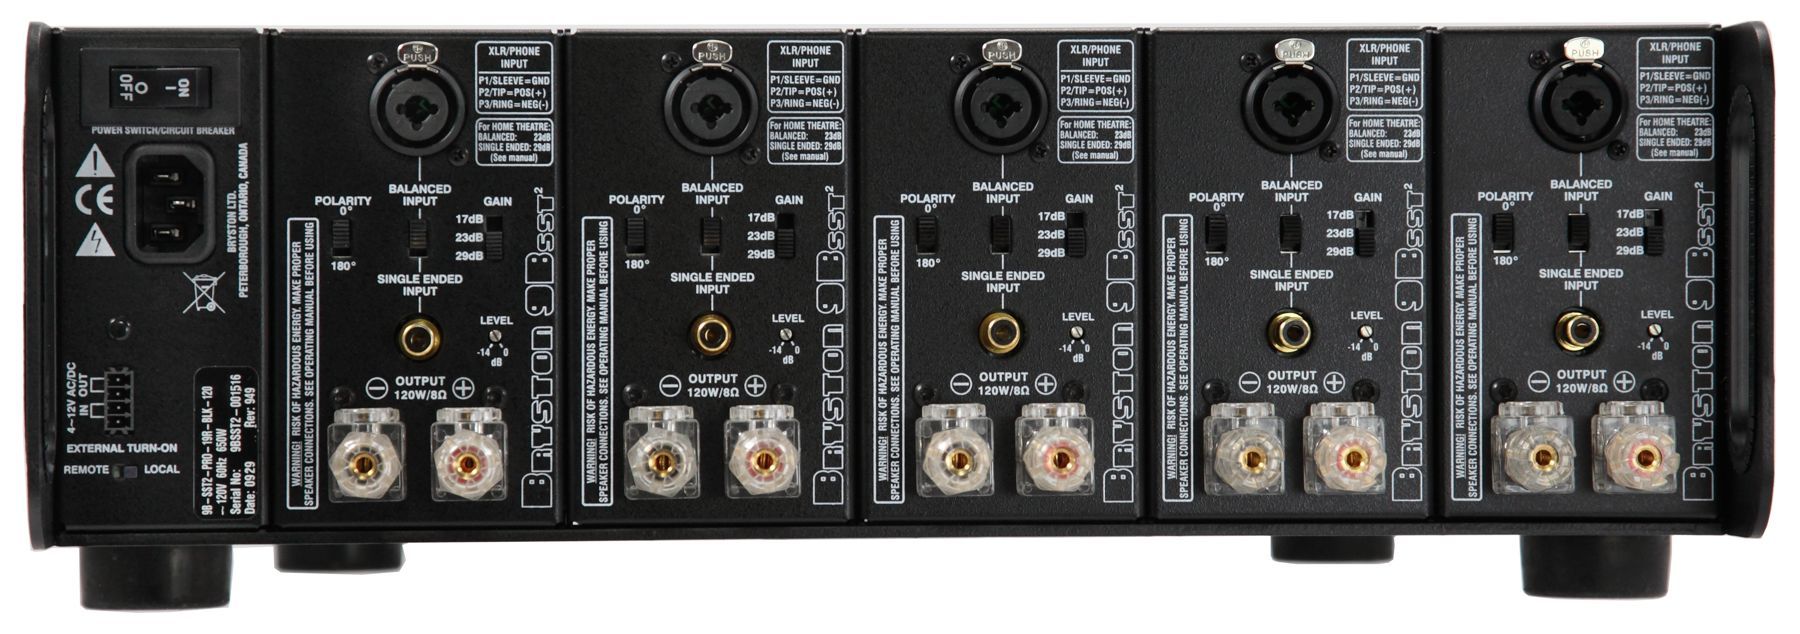 Bryston 9BSST3 Multi-Channel Power Amplifier